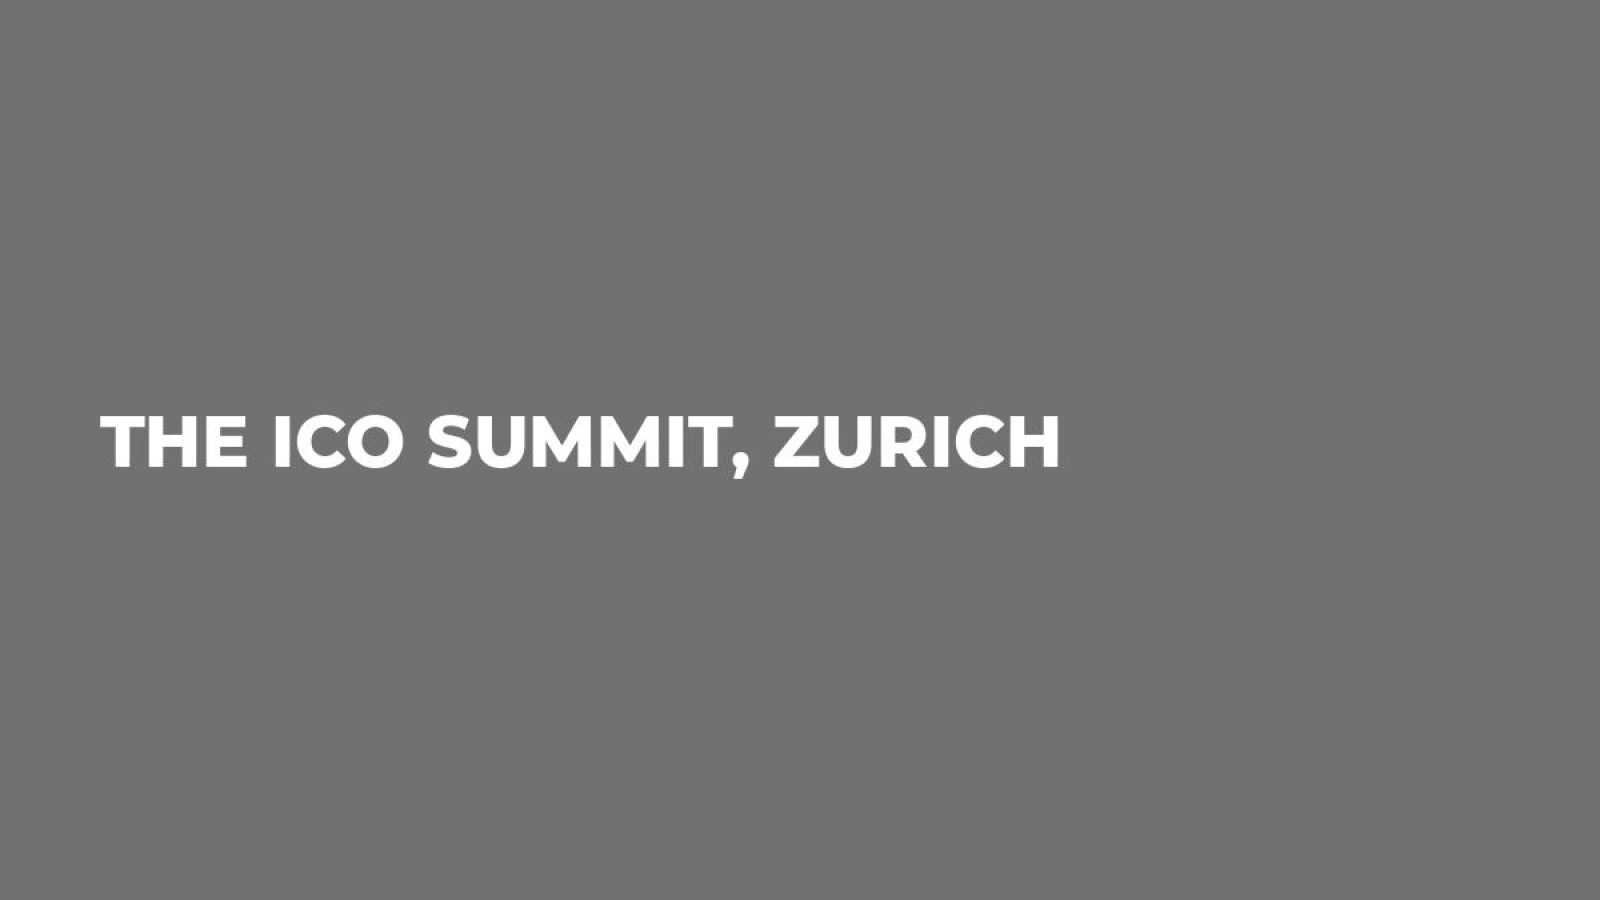 The ICO Summit, Zurich